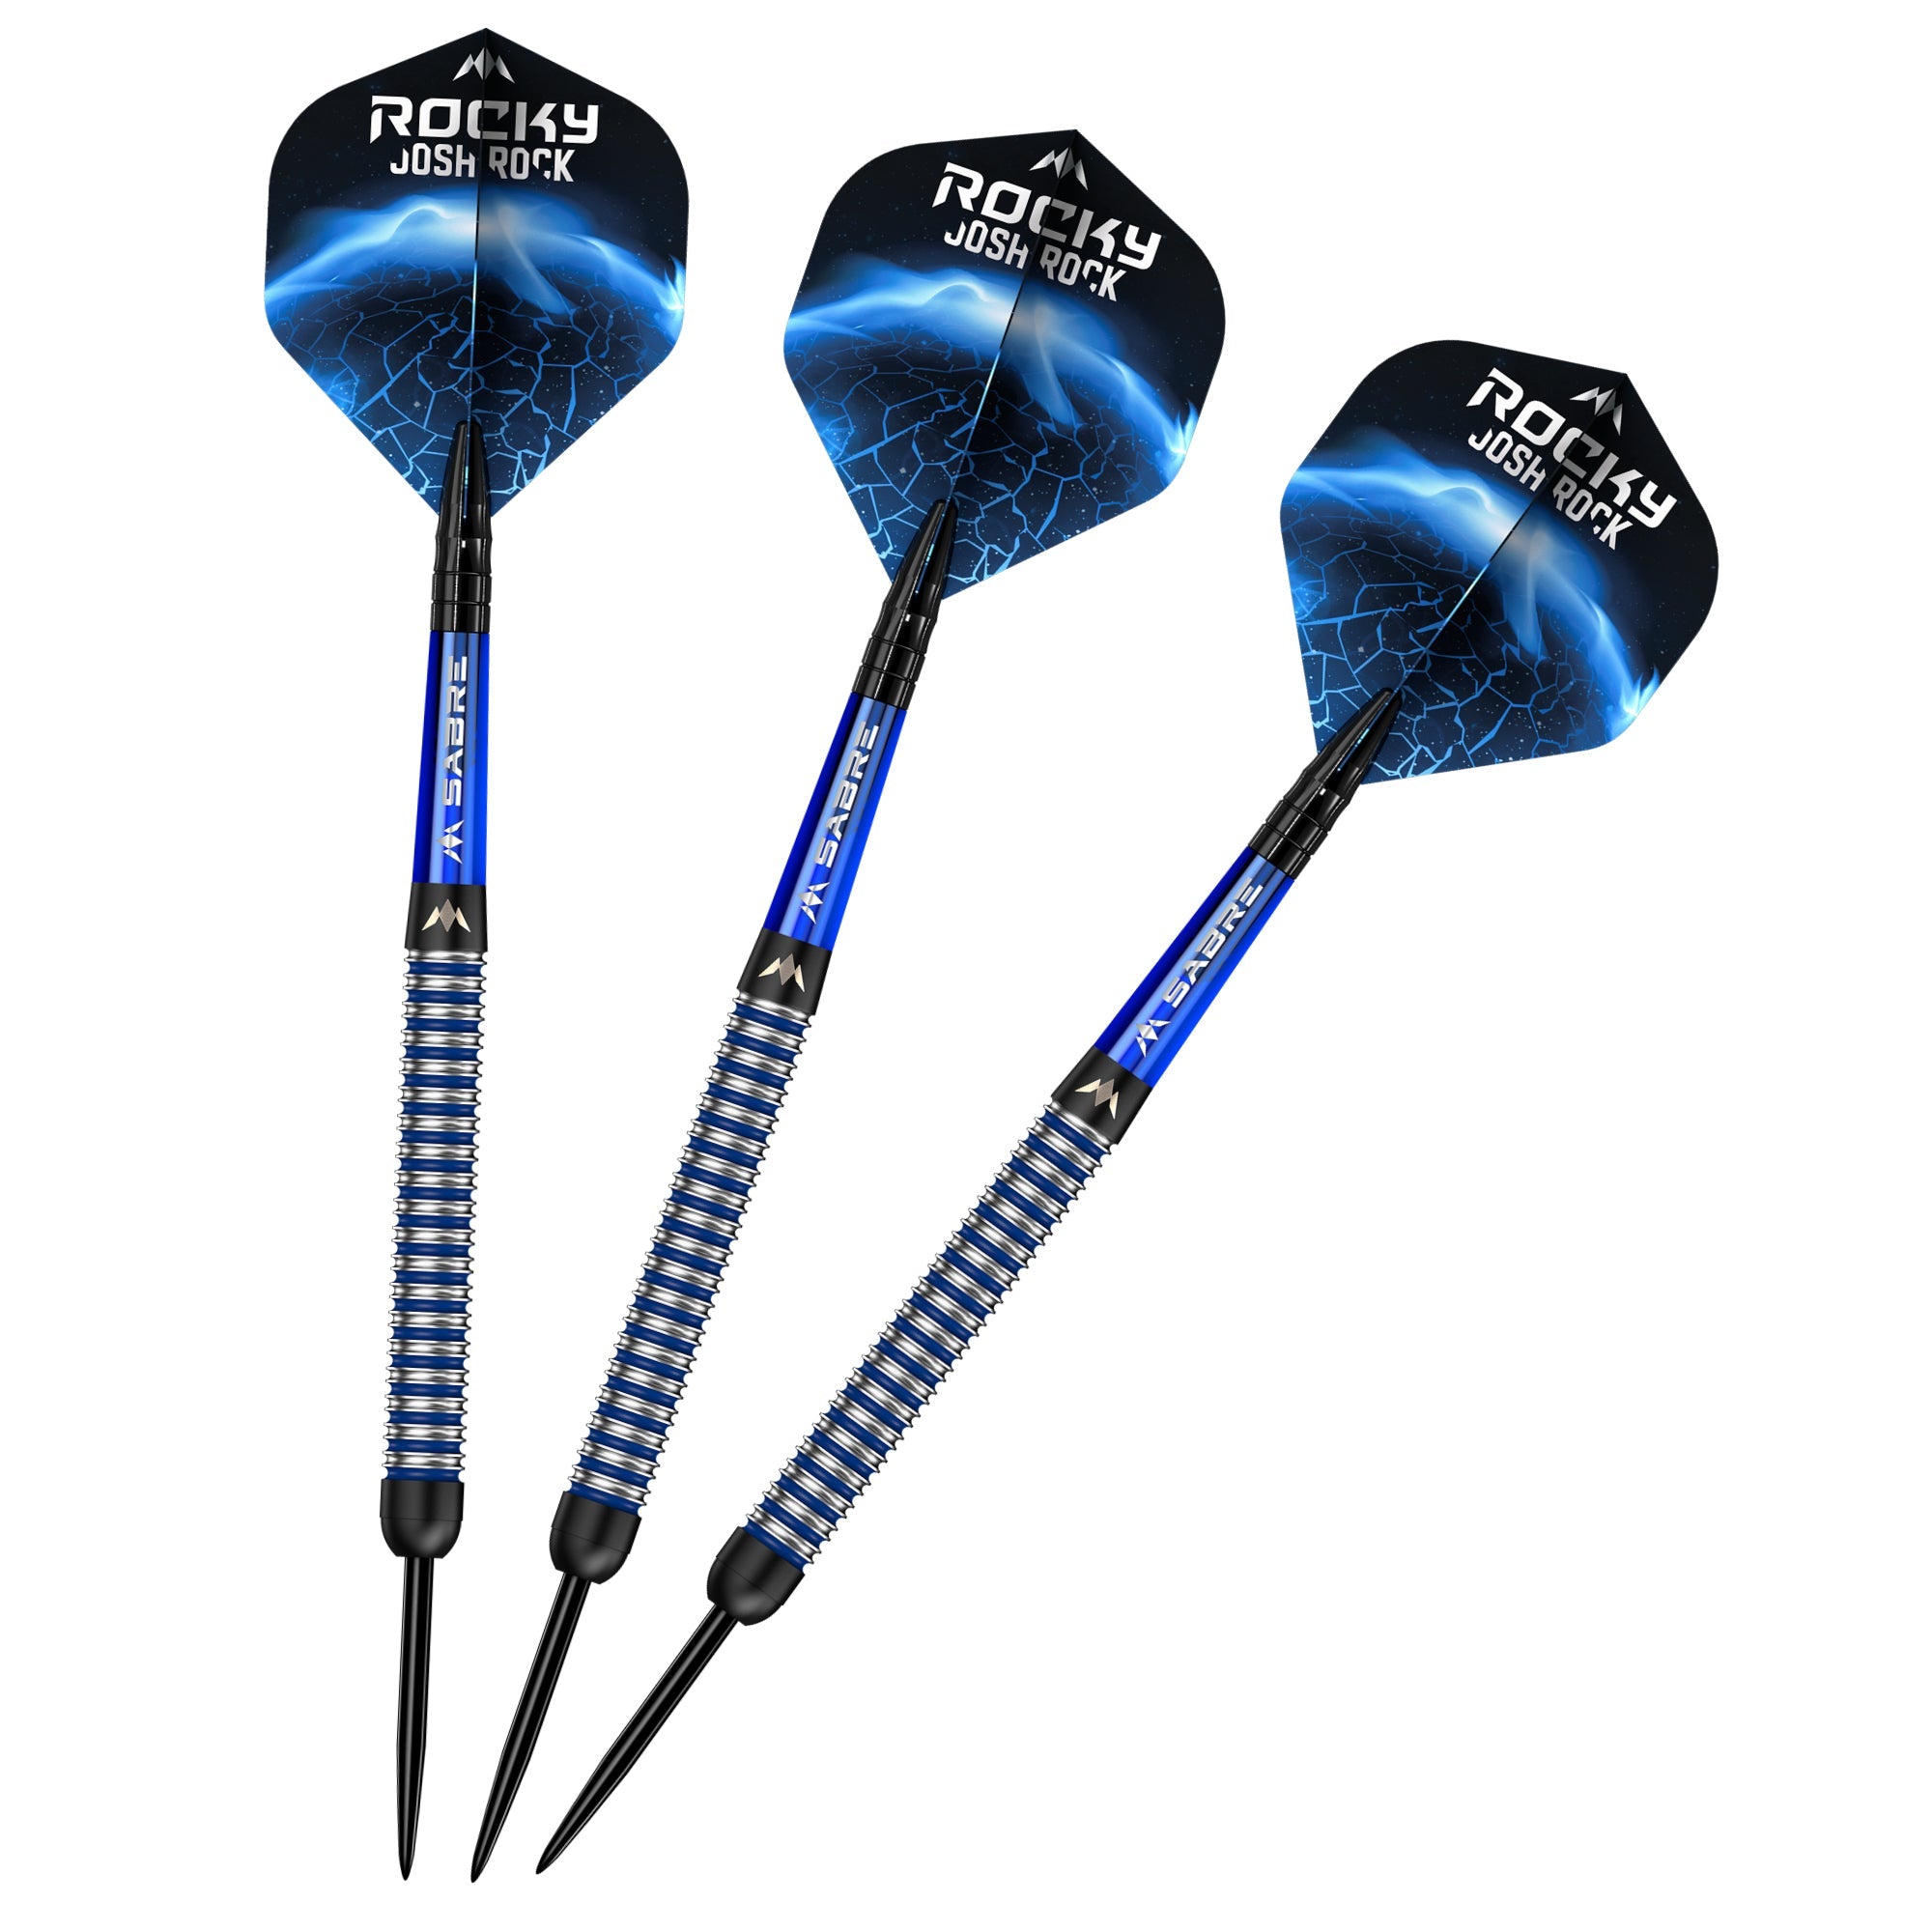 Mission Josh Rock Darts v1 - Steel Tip - The Rock - Black & Blue